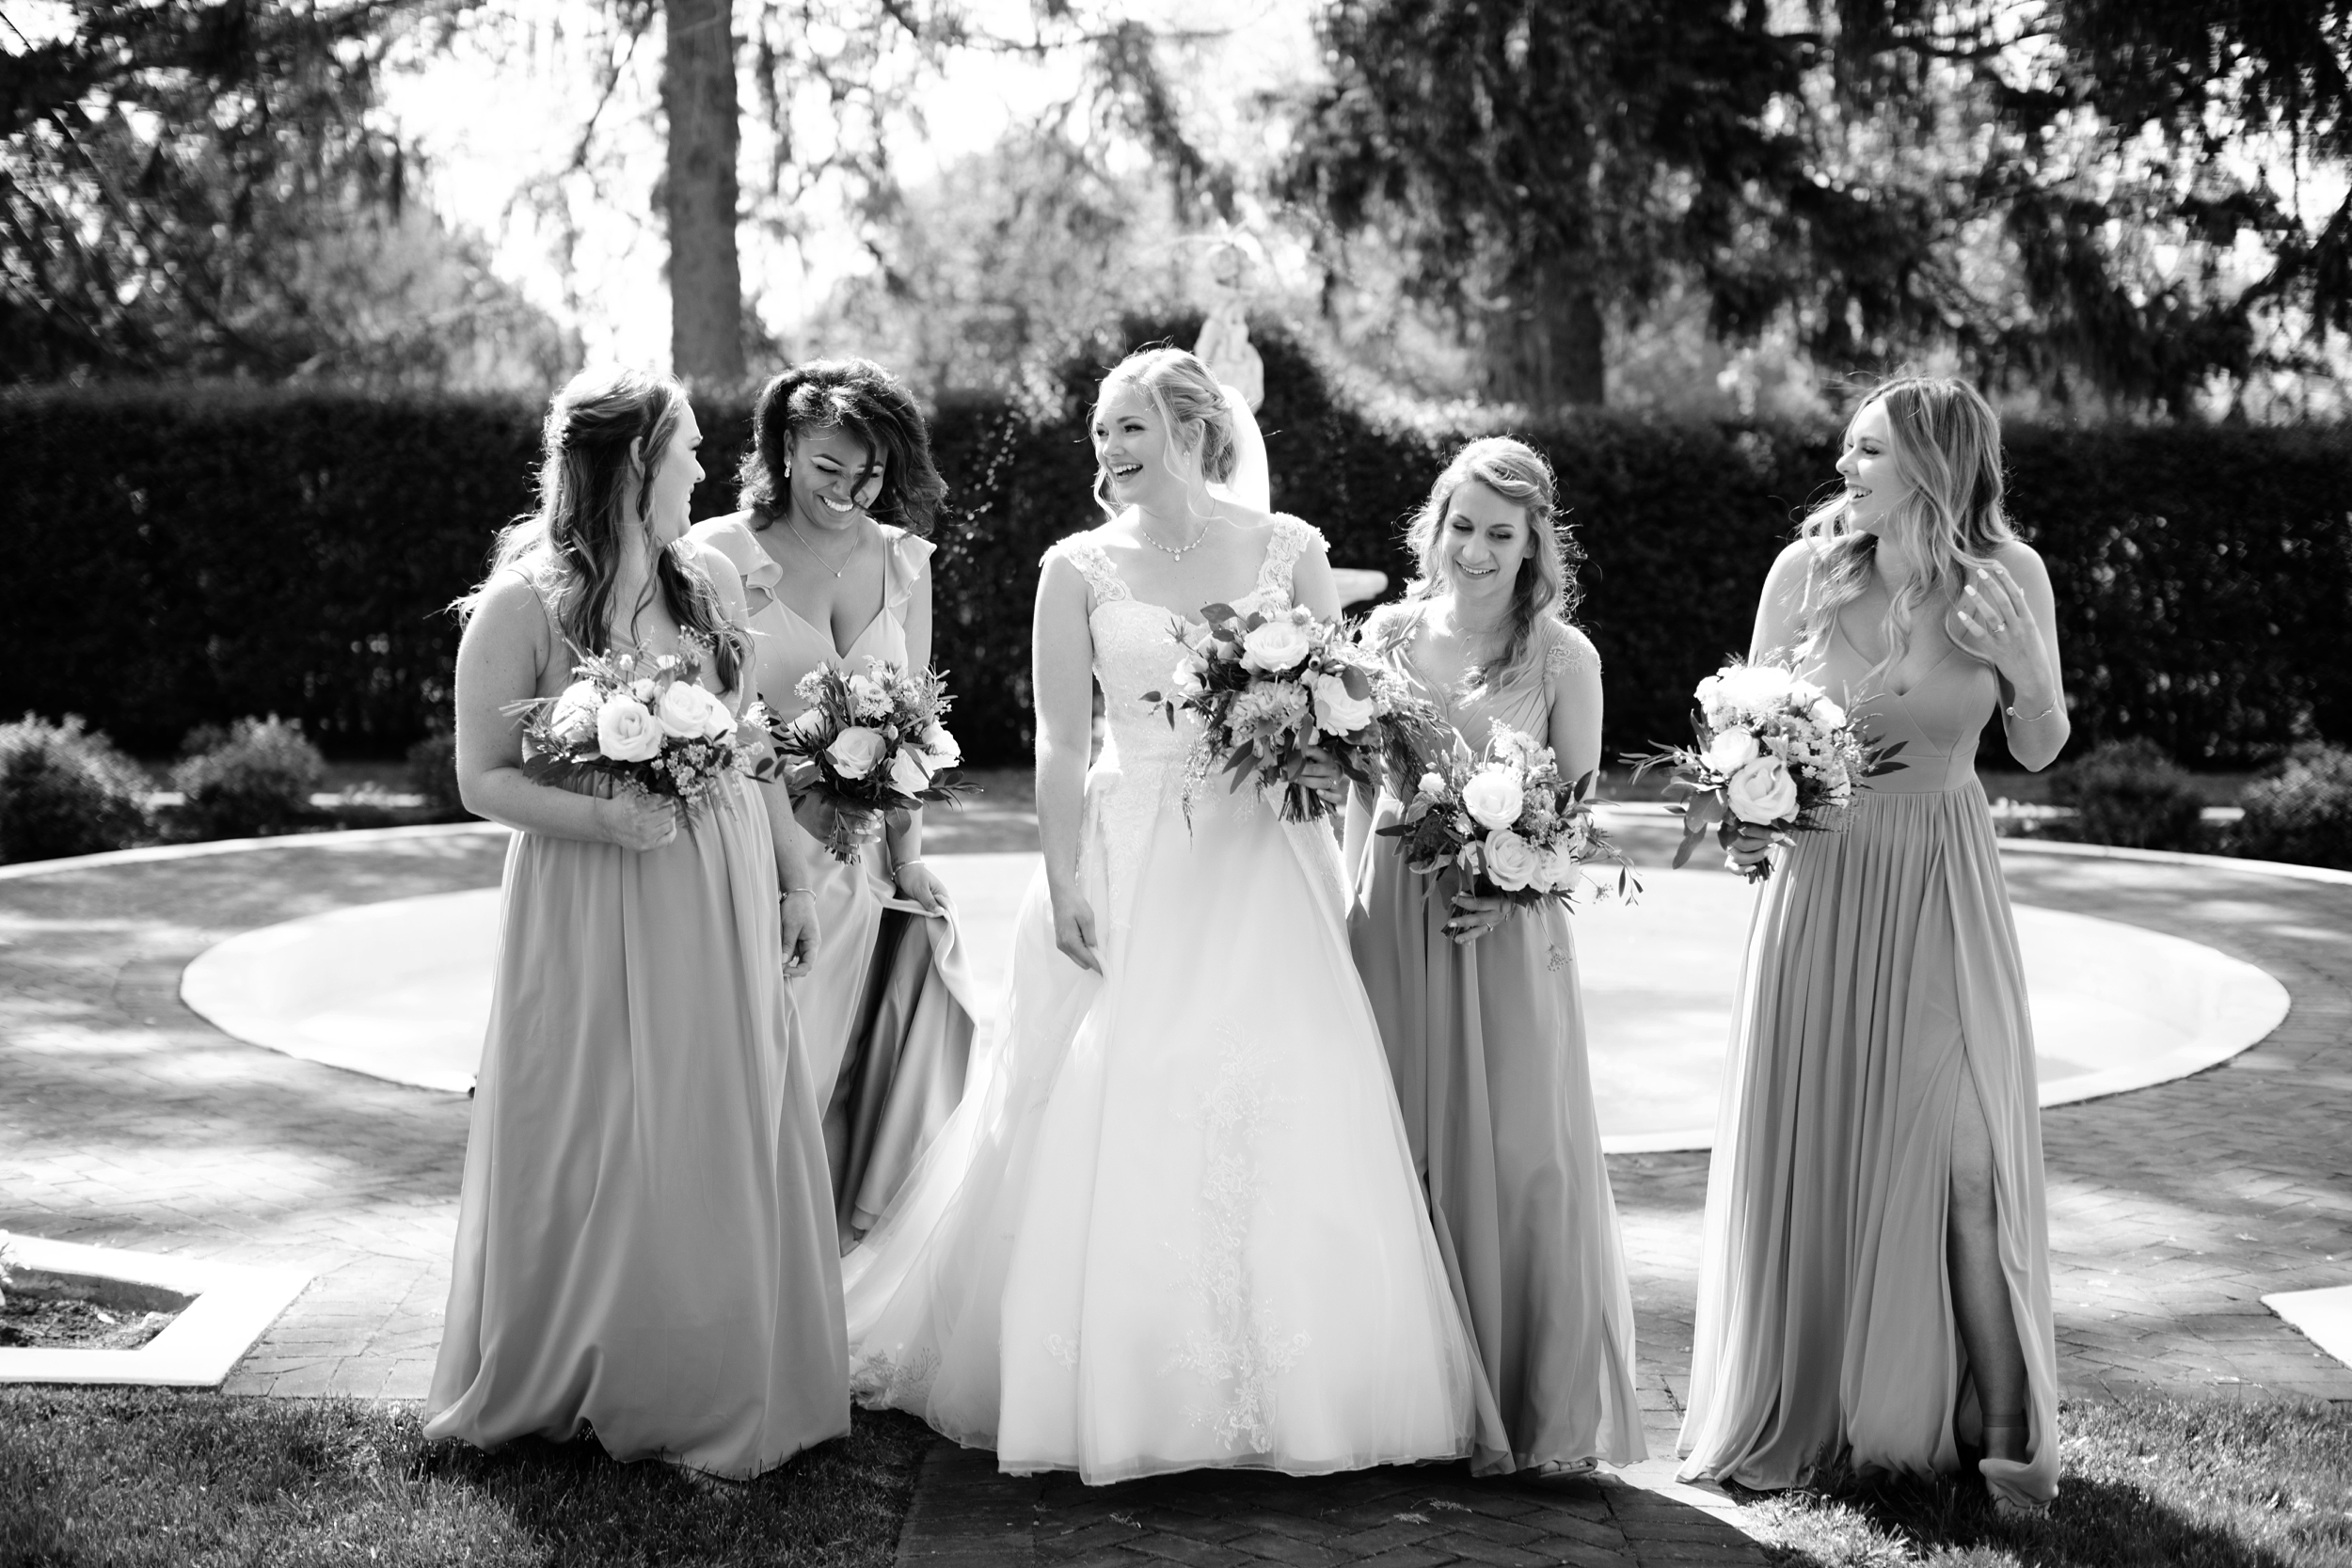 White Chimneys Wedding, Lancaster PA Wedding Photographer, Janae Rose Photography